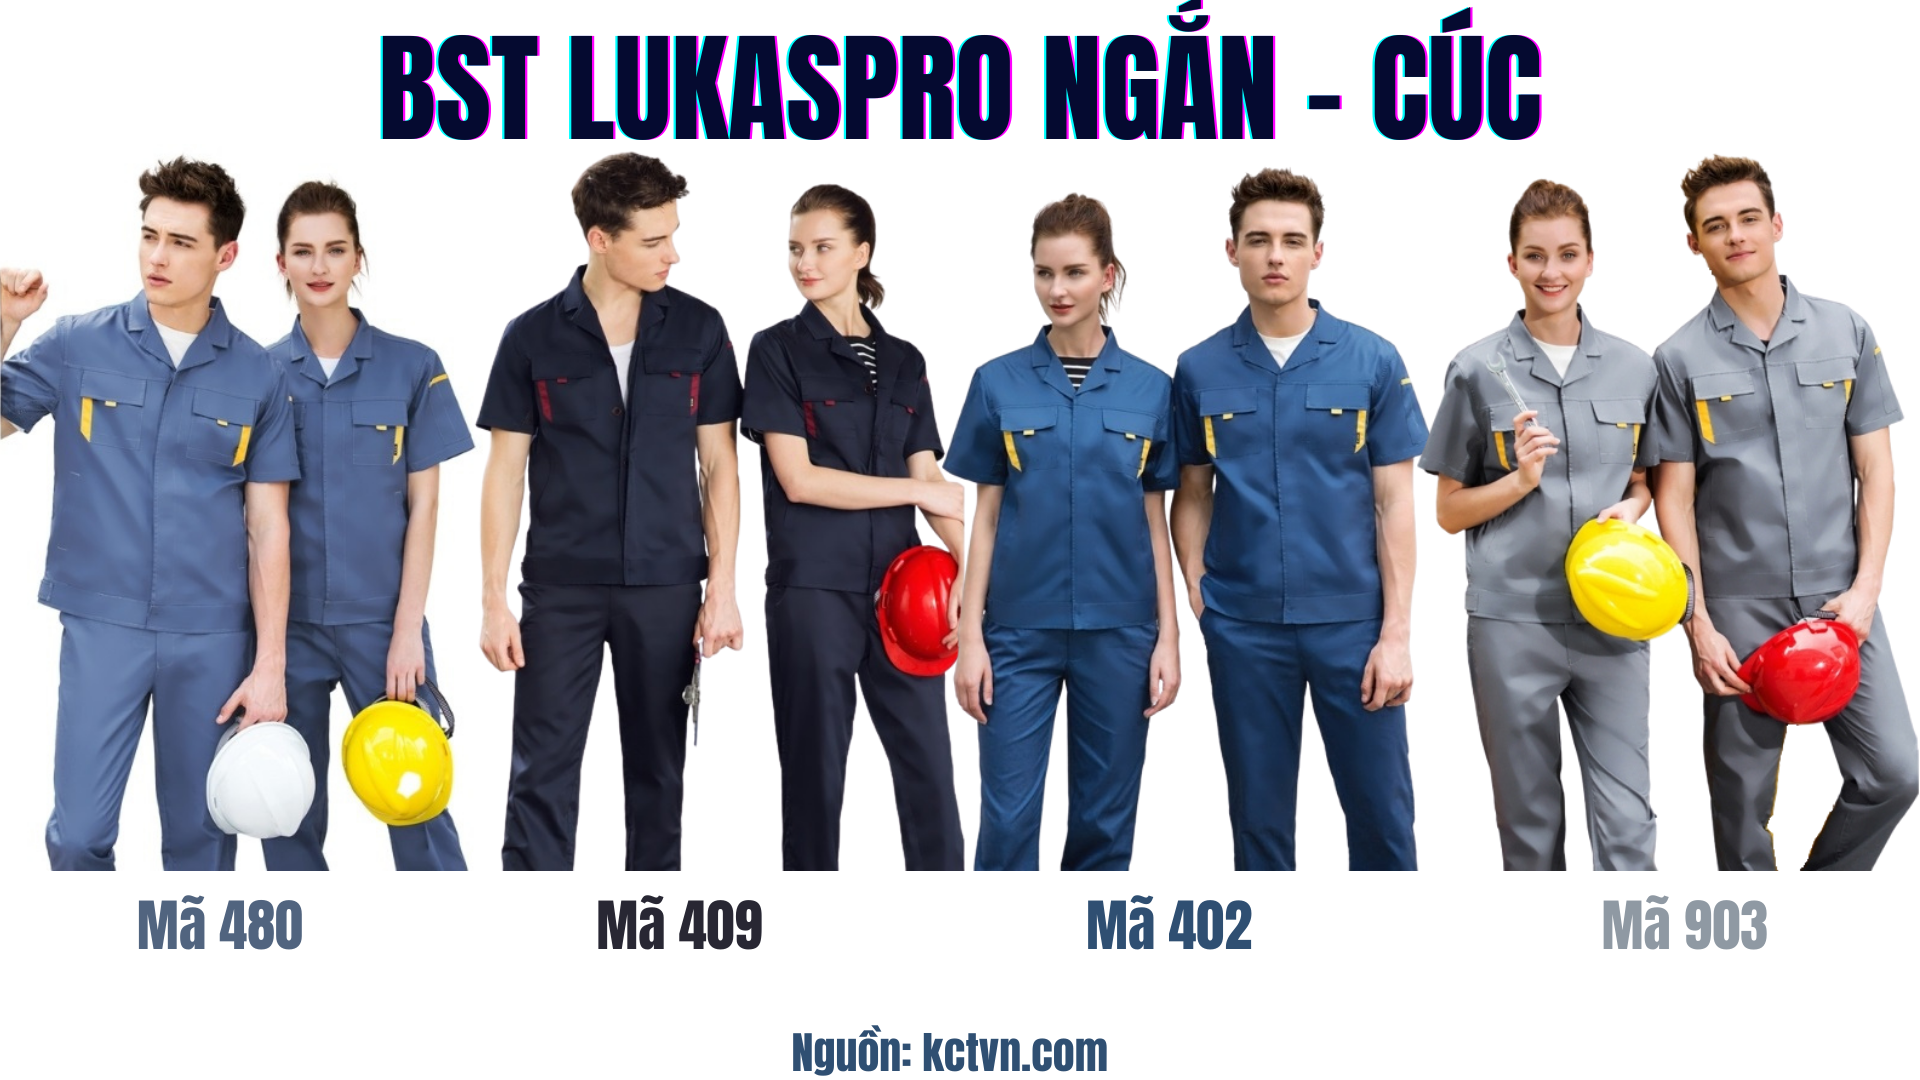 Các mẫu quần áo bảo hộ lao động Lukaspro chính hãng Ngắn cúc